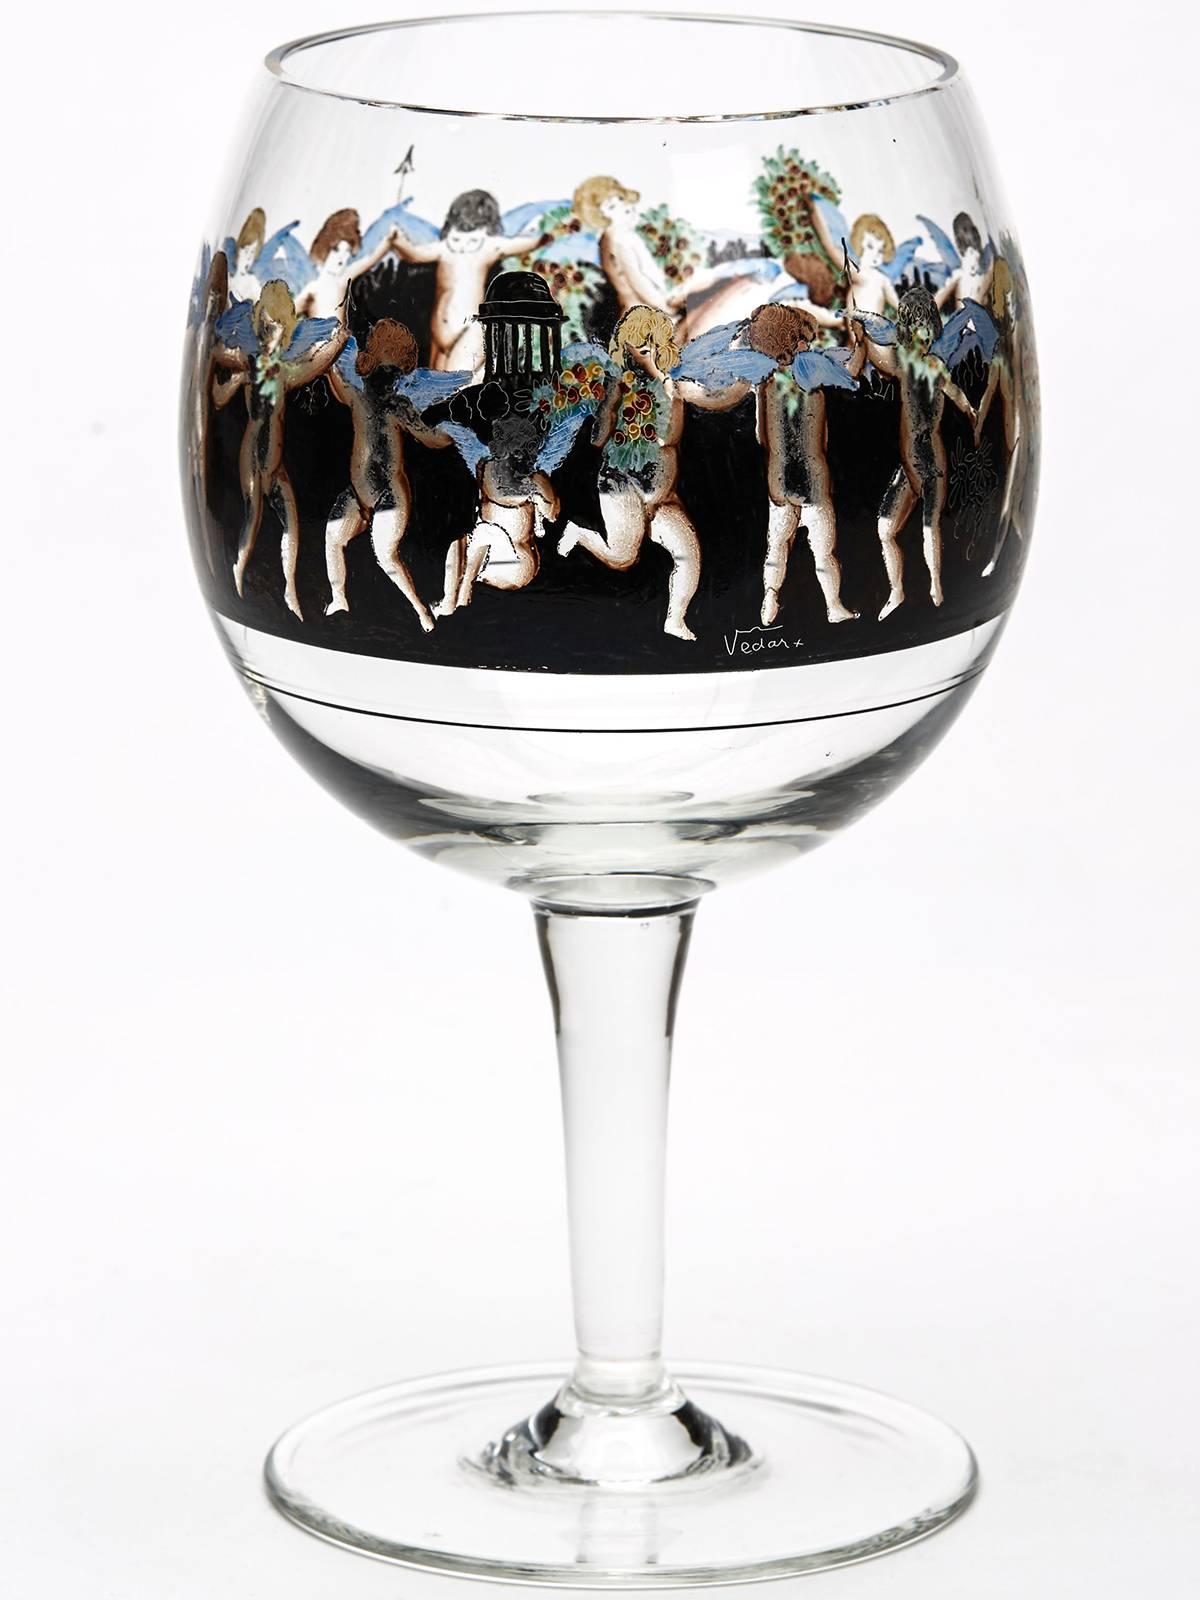 Un ensemble élégant de six gobelets à pied en verre italien de style Art Déco, chacun décoré d'une bande de putti ailés émaillés sur un fond de paysage noir continu. Les putti sont peints en émaux colorés avec des détails finement peints et cinq des